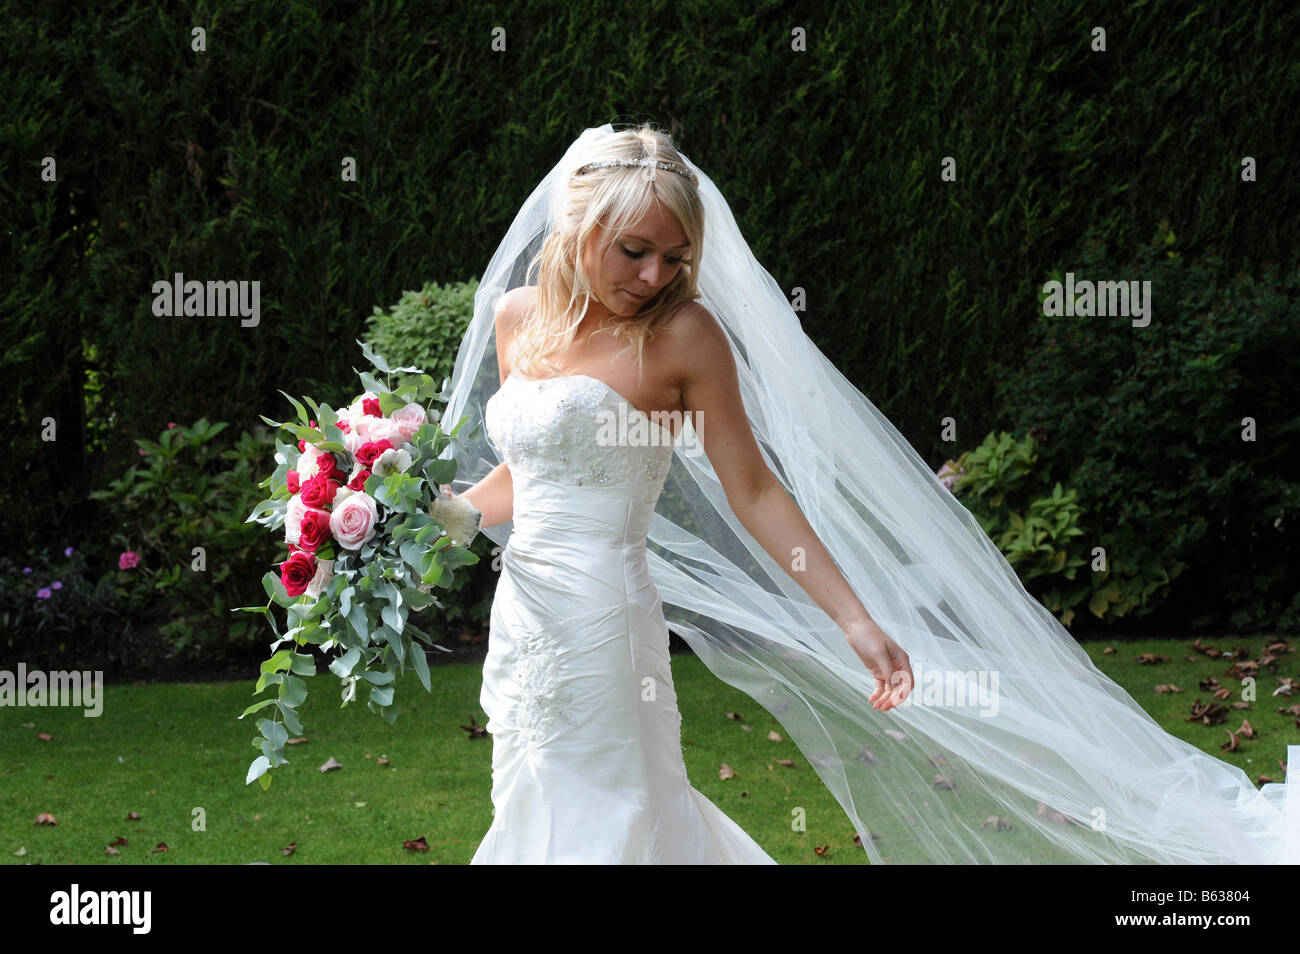 Frisch verheiratete Braut in ihrem Kleid, West Yorkshire Modell veröffentlicht Stockfoto